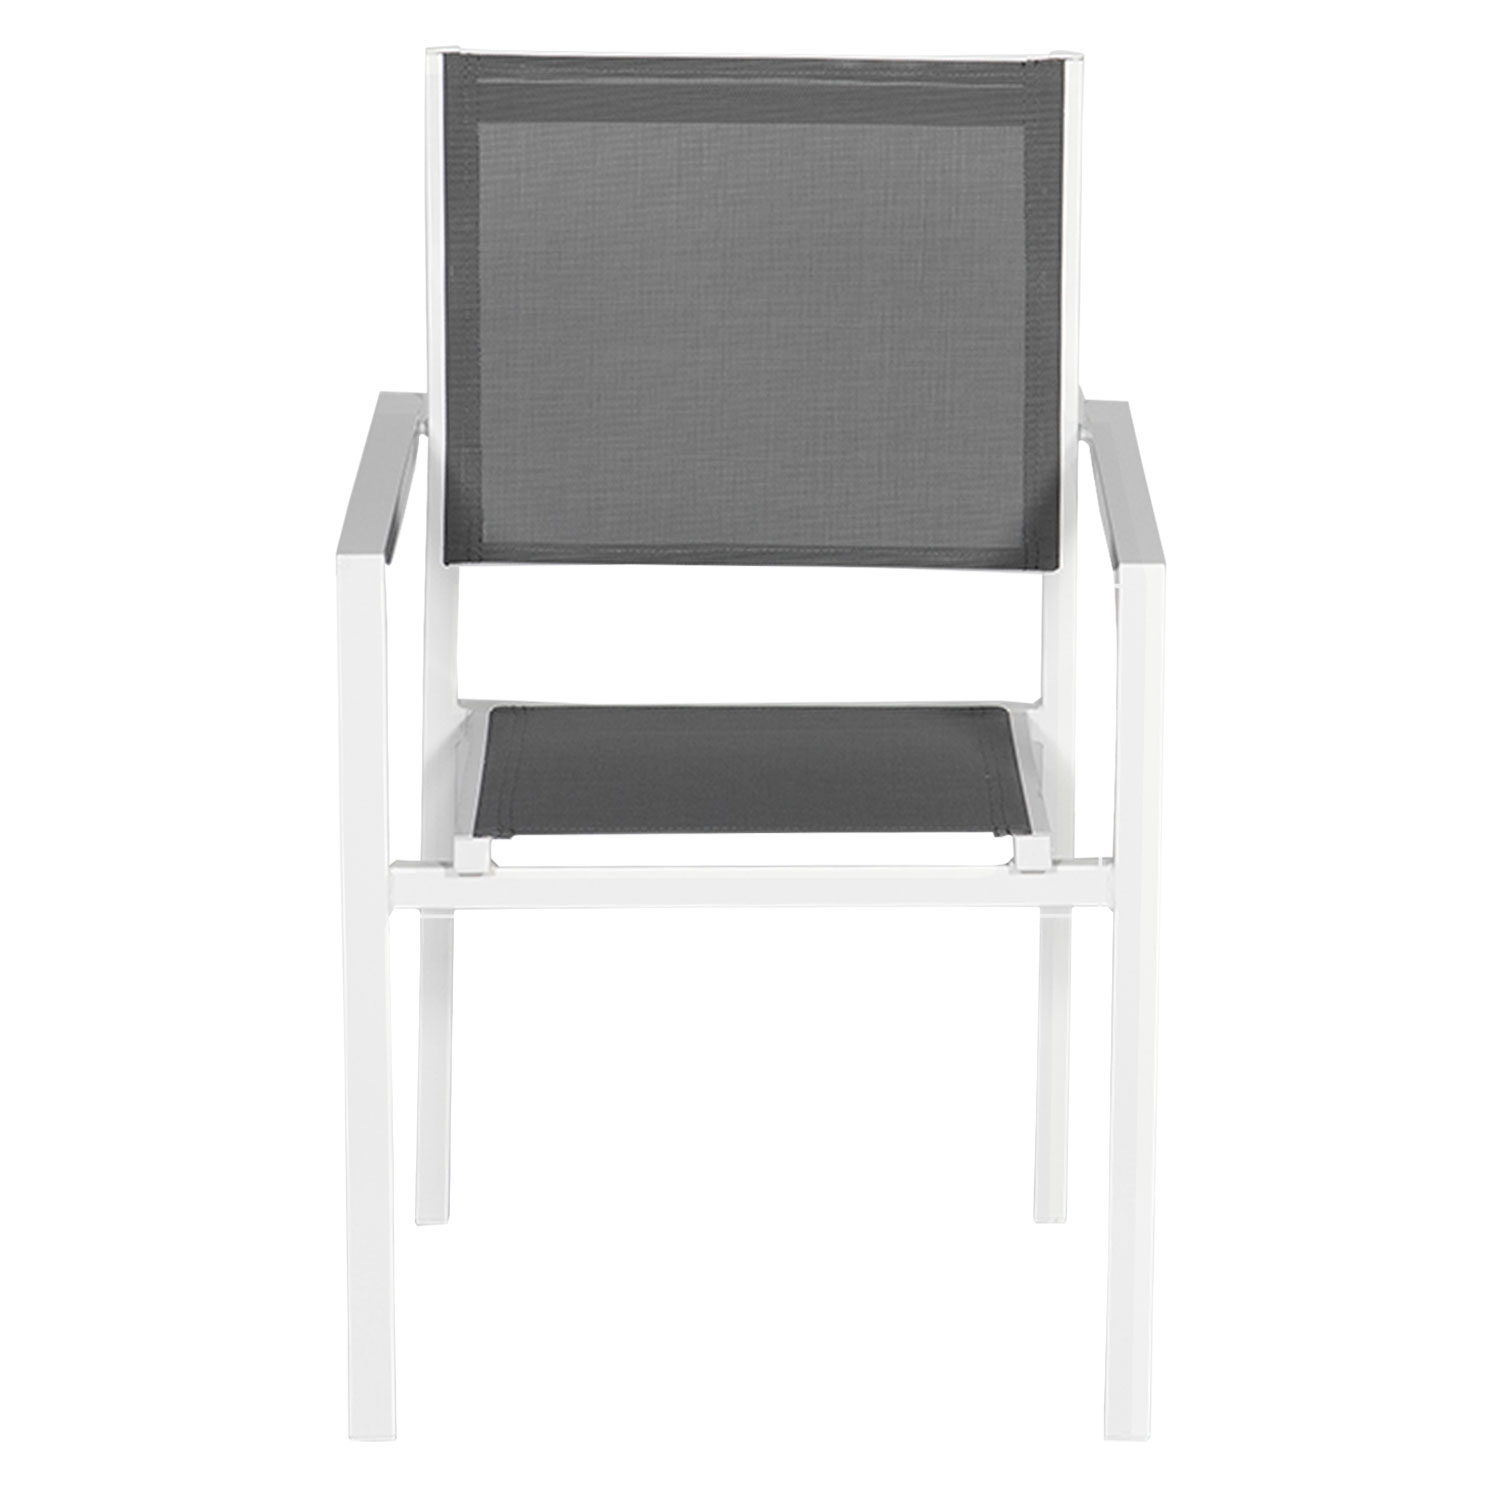 10er-Set Stühle aus weißem Aluminium - graues Textilene